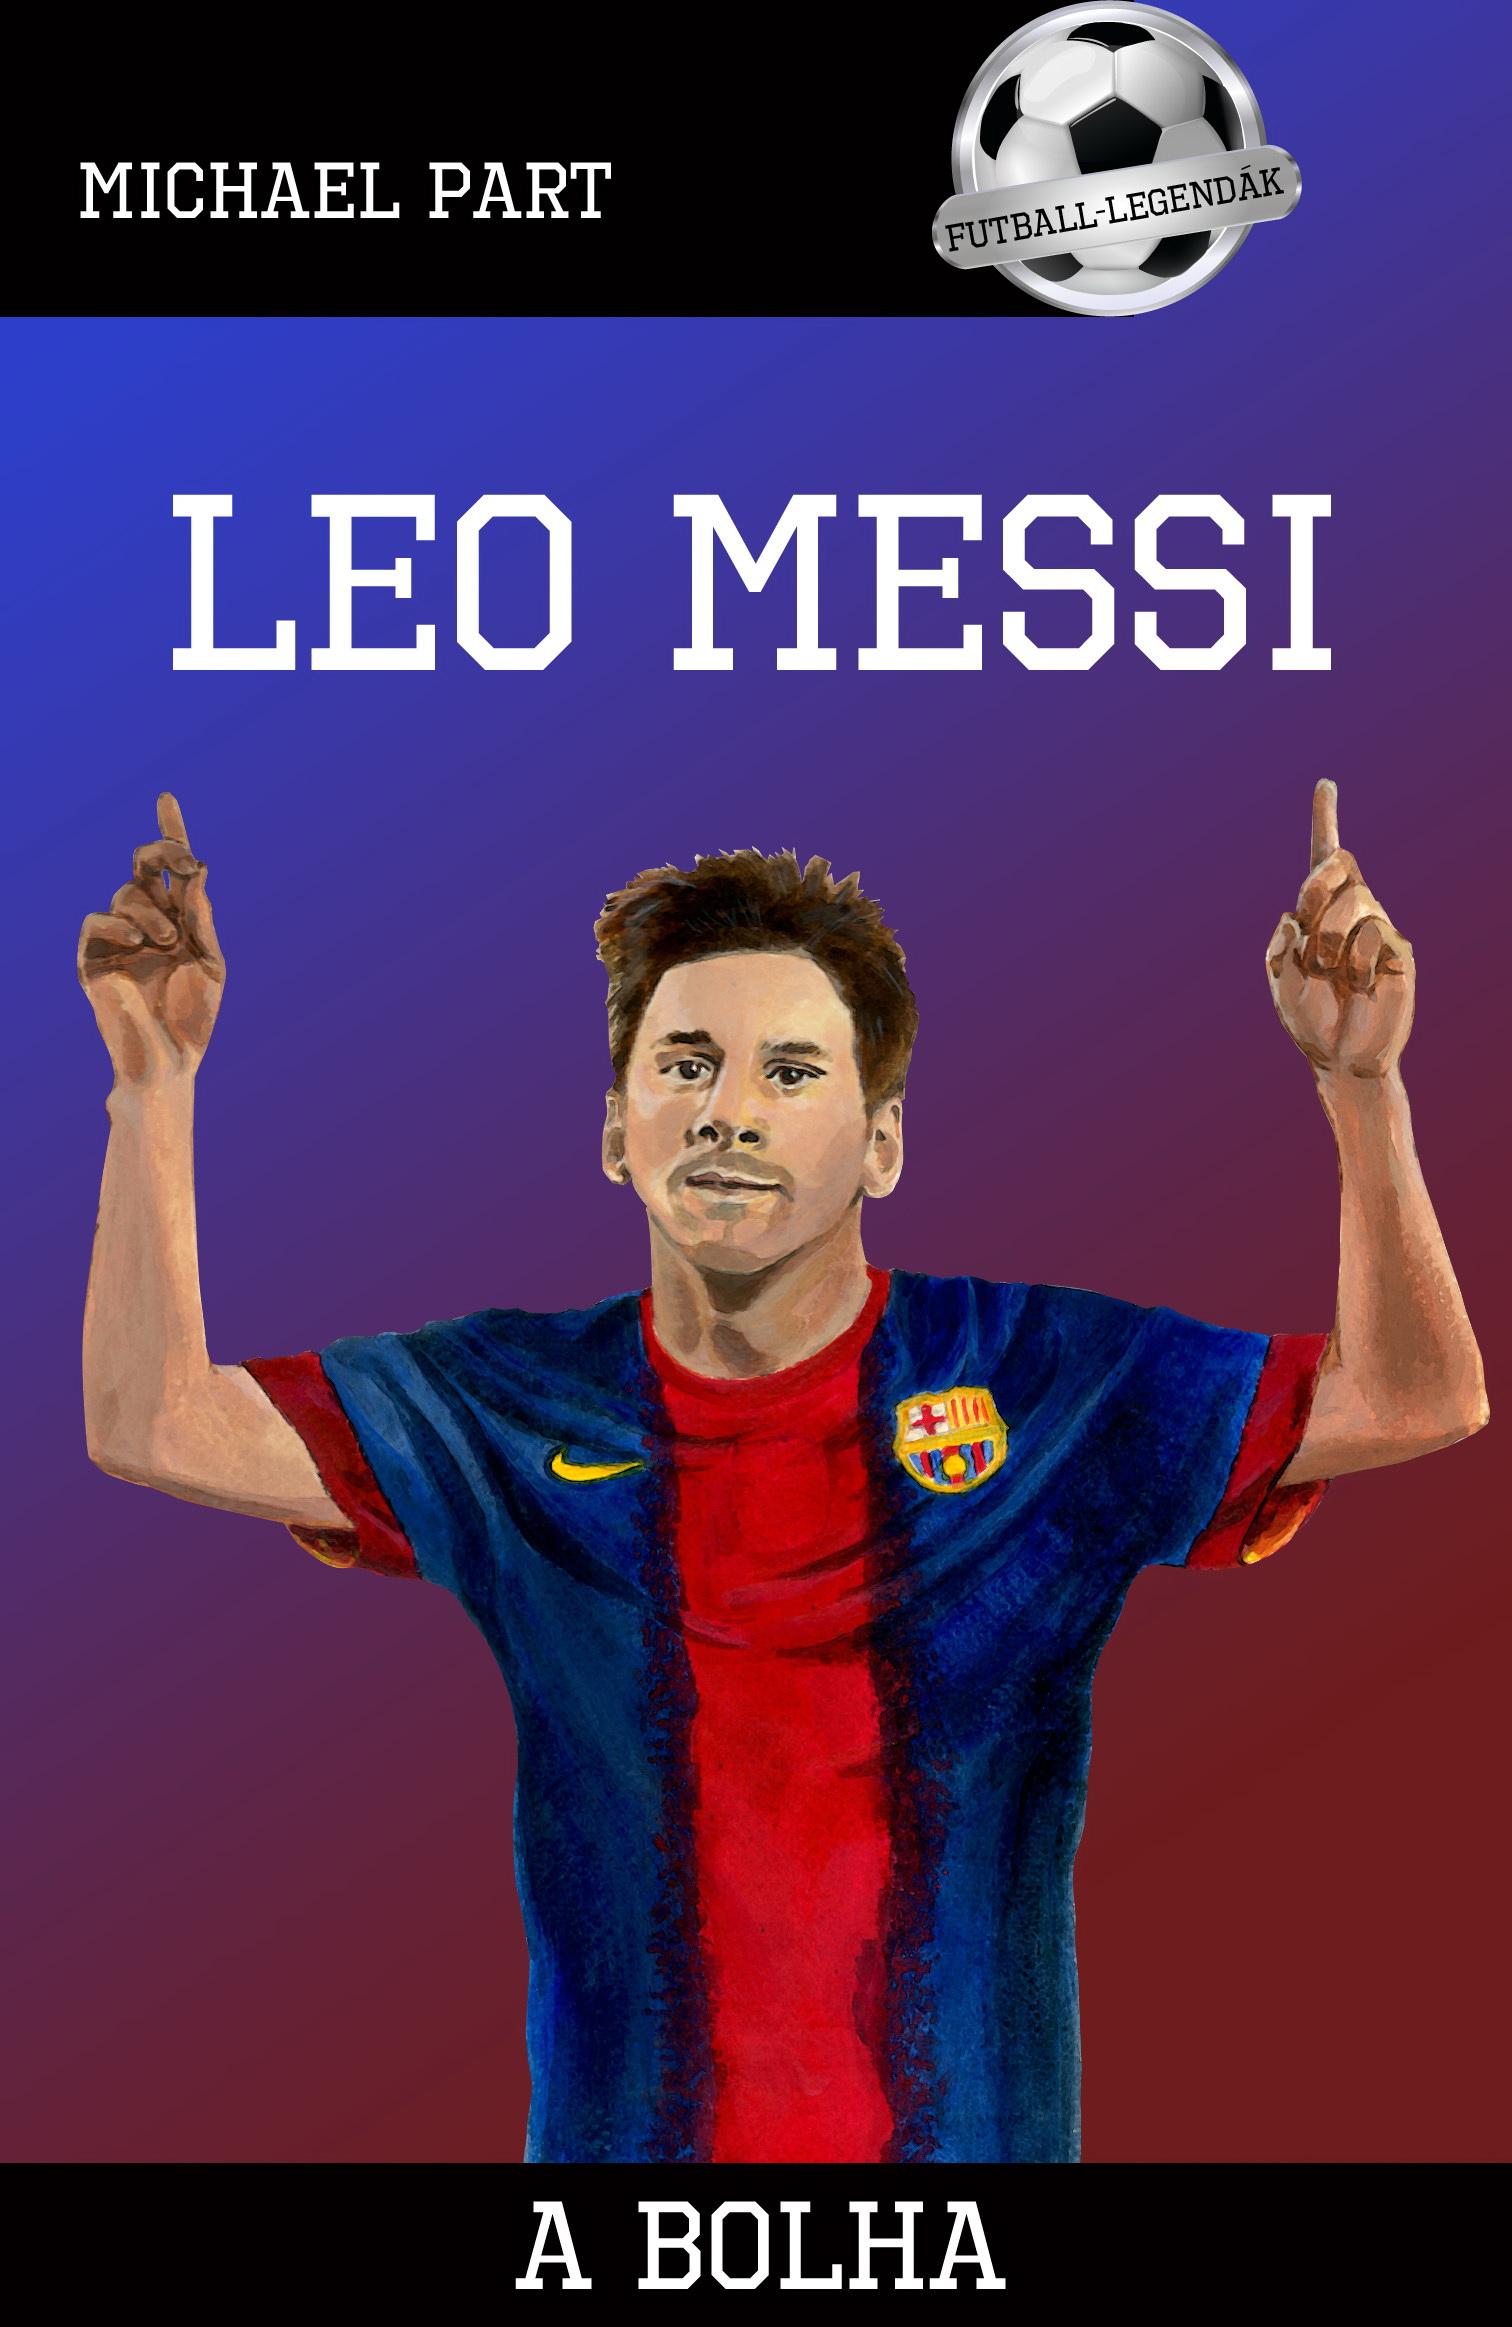 PART, MICHAEL - Leo Messi - A bolha